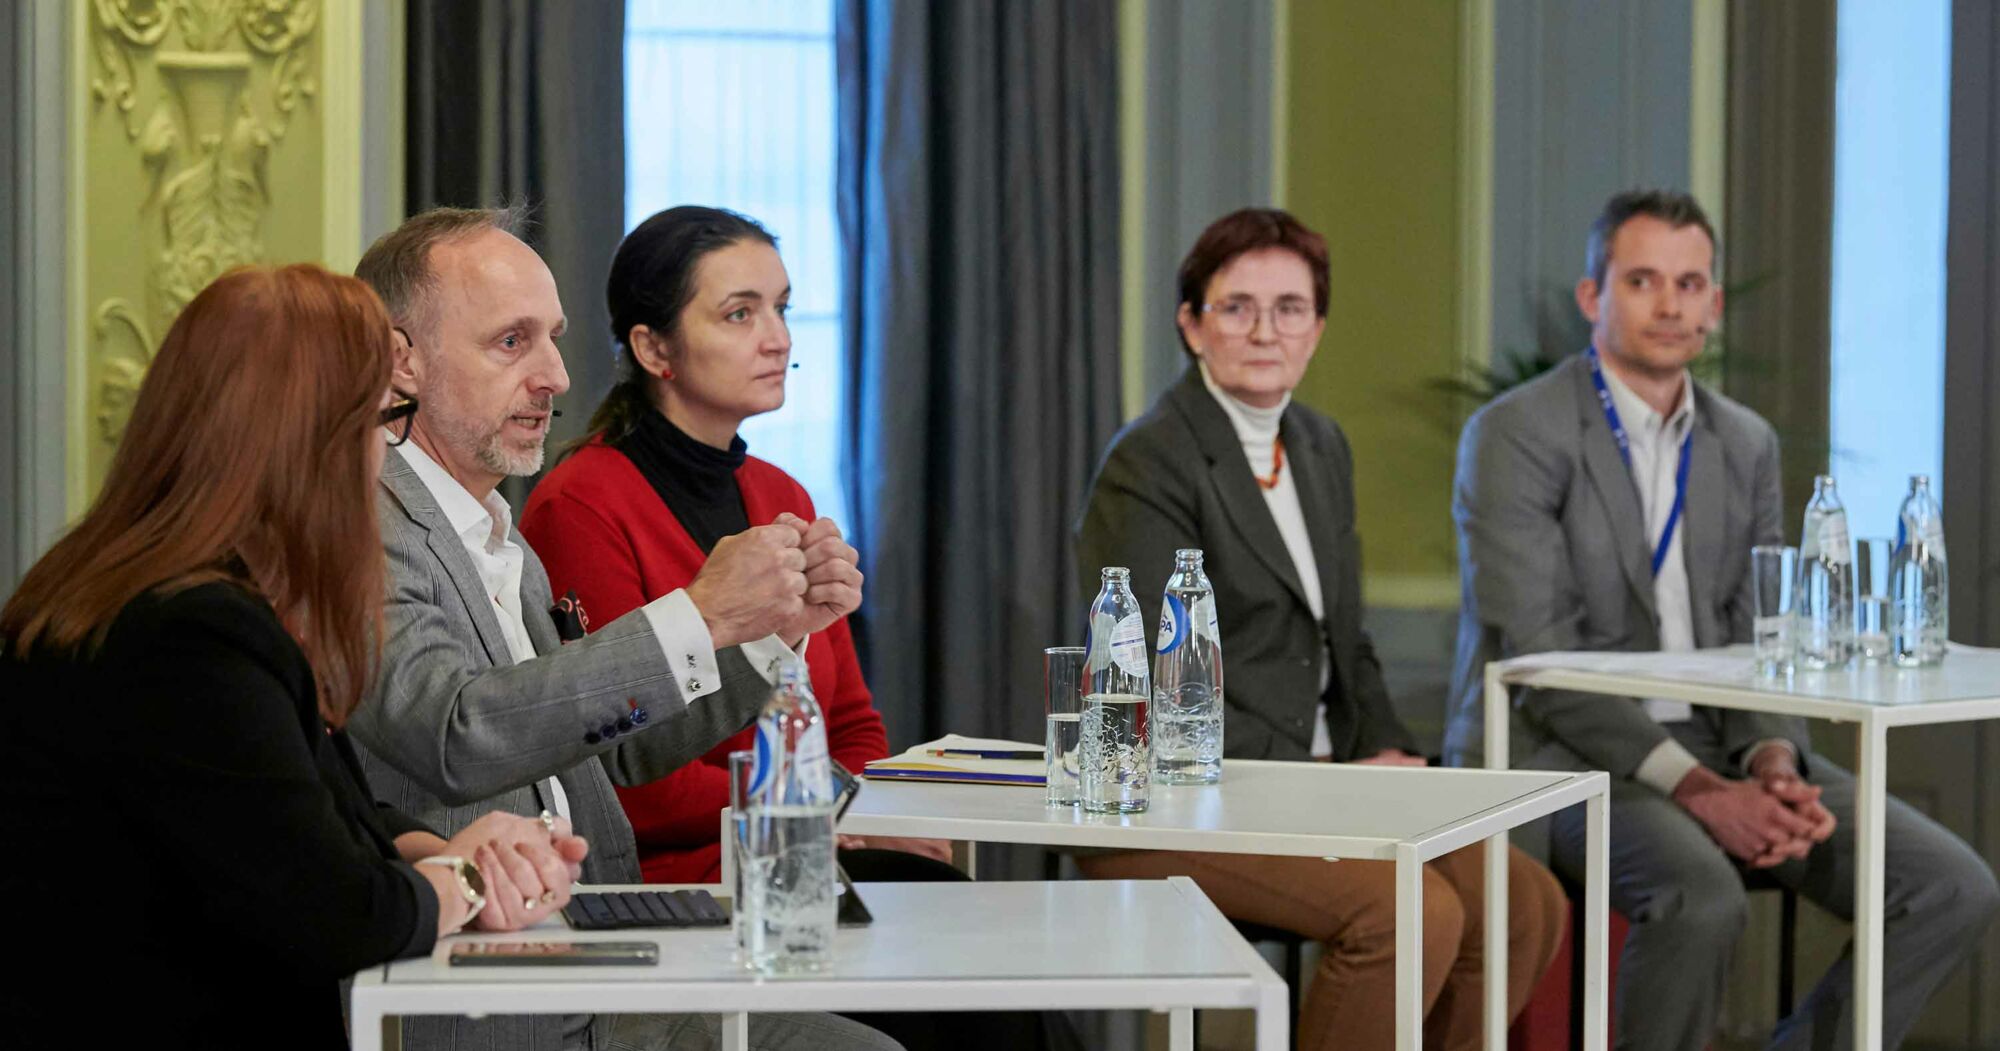 Das Foto zeigt Dr. Stephan Hofmeister, den stellvertretenden Vorstandsvorsitzenden der KBV bei einer gemeinsamen Veranstaltung mit Vertretern der BÄK zum Thema Europäischer Gesundheitsdatenraum (EHDS).